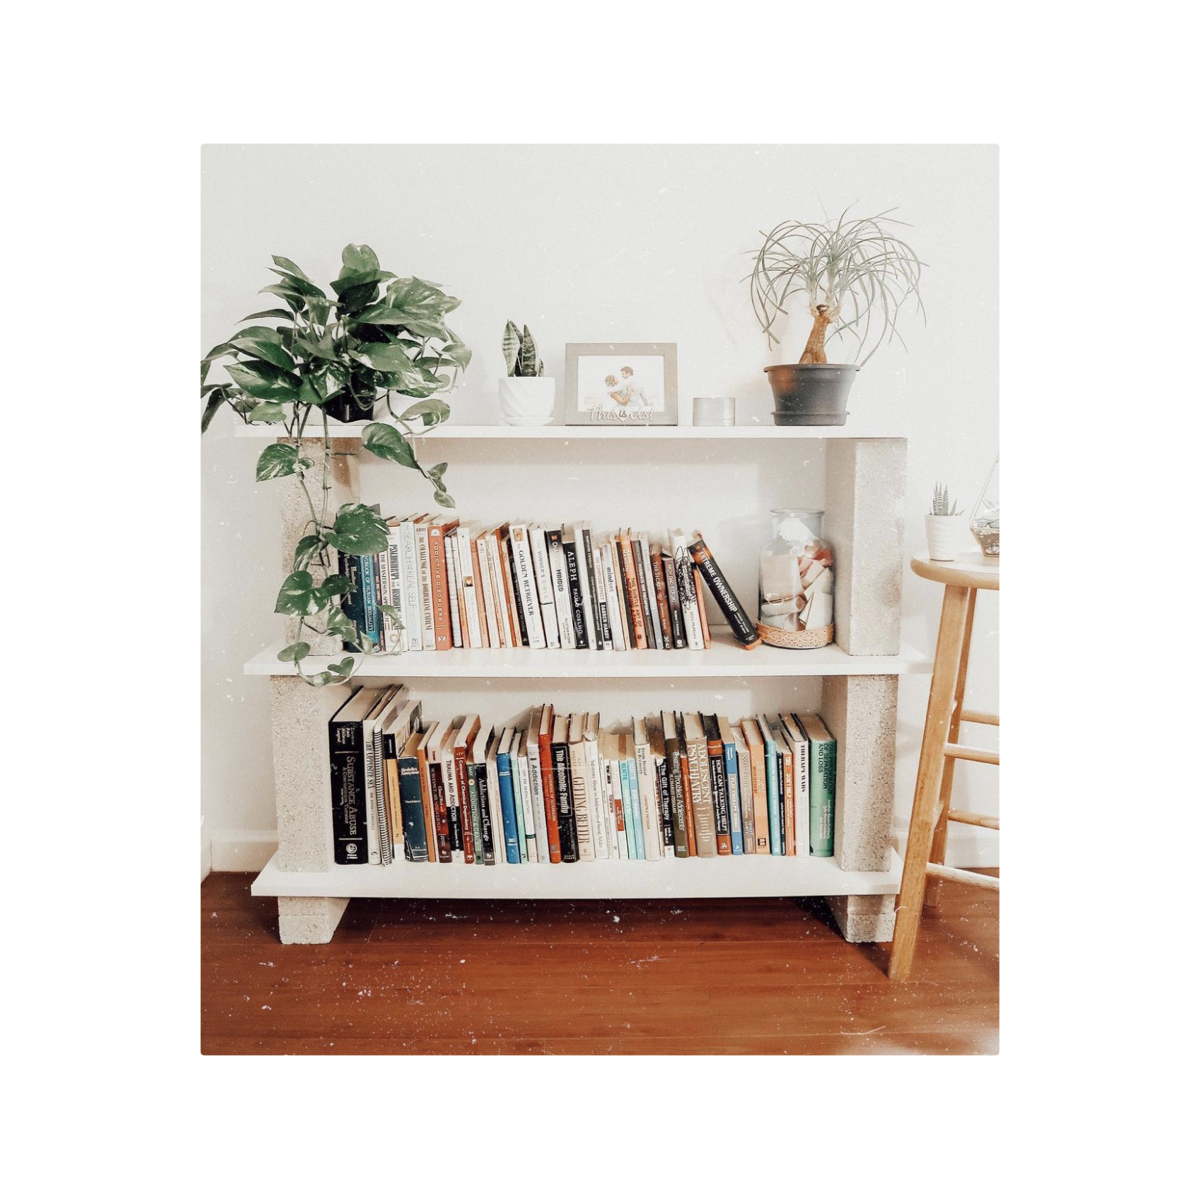 25 Best Diy Bookshelf Ideas 2021 Easy Homemade Bookshelves